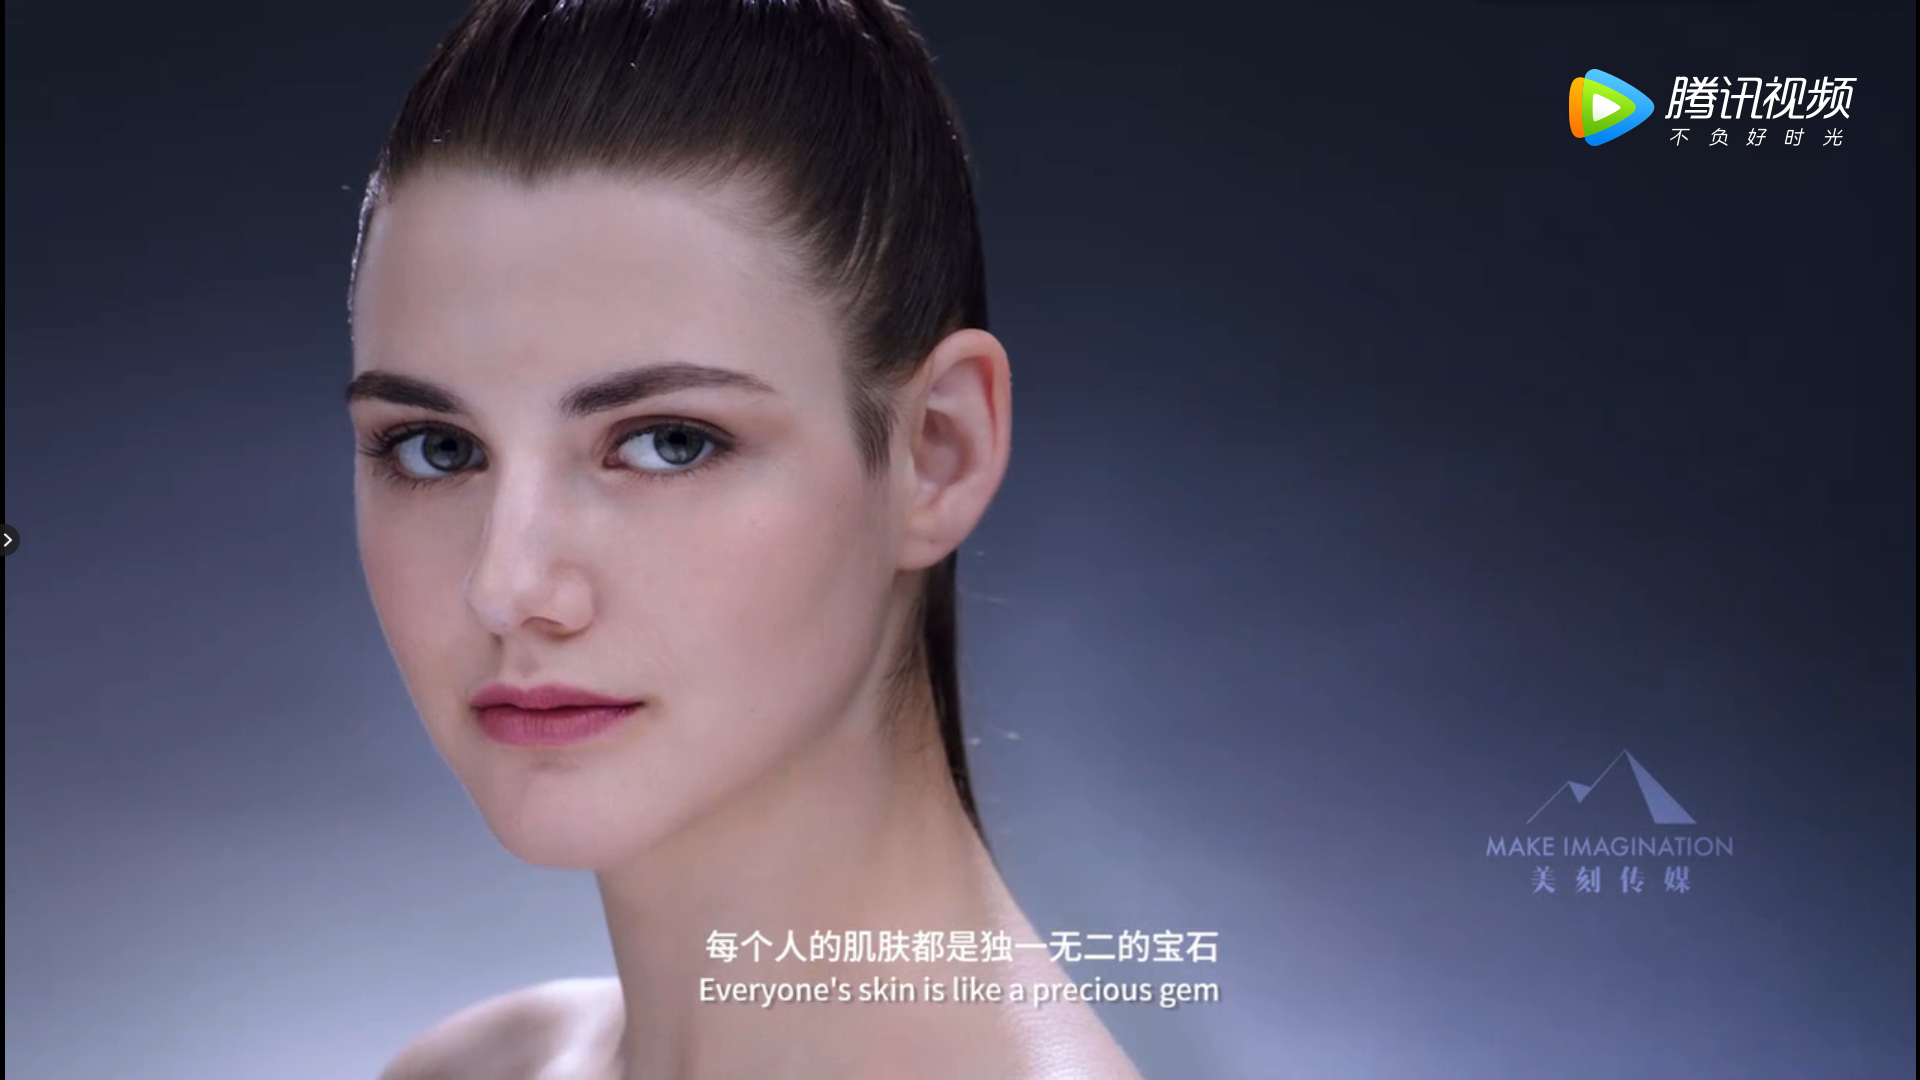 深圳创业公司定制科技美妆产品宣传片，生动展现企业形象与产品理念